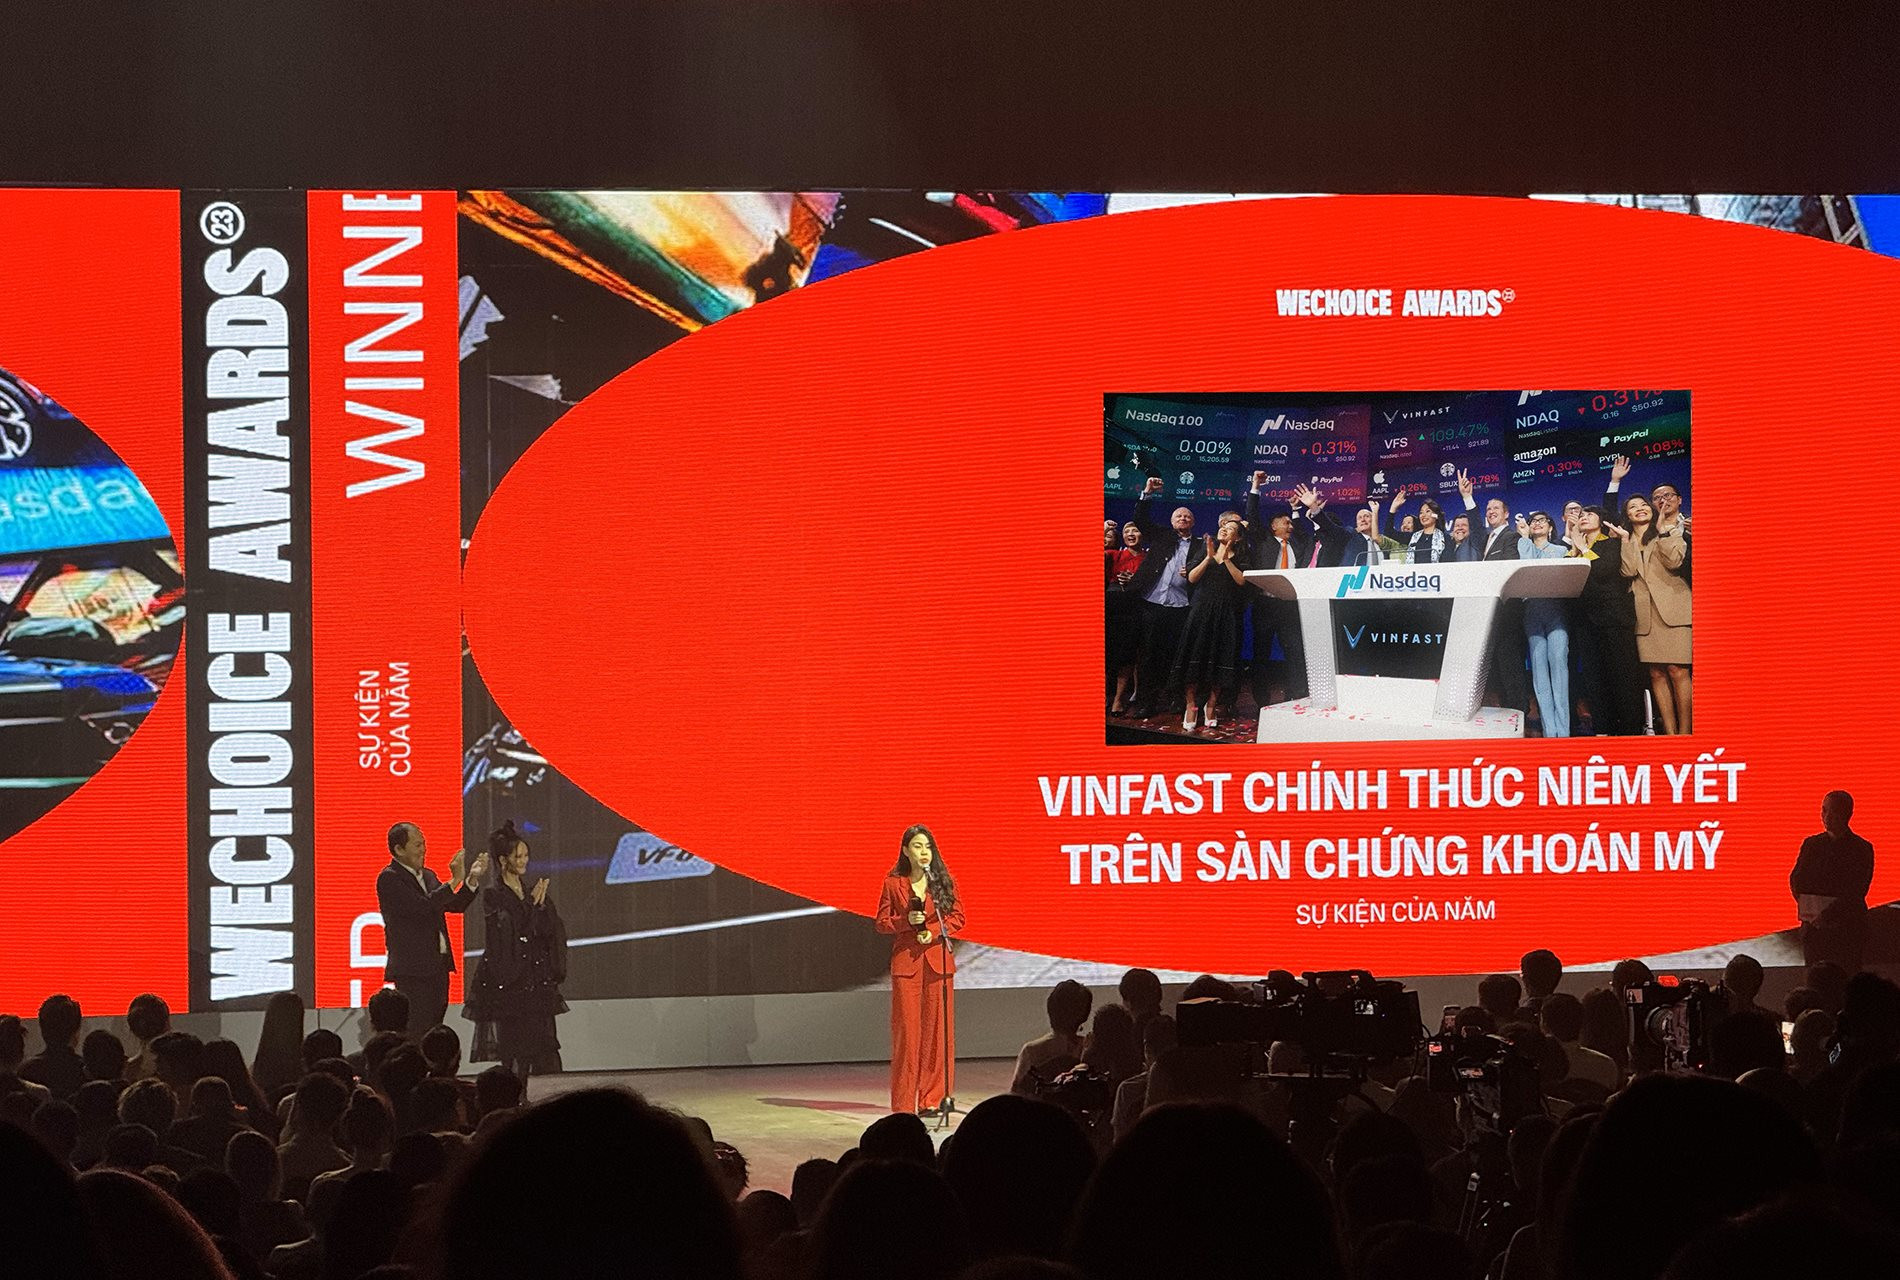 VinFast hành trình hiện thực hóa giấc mơ doanh nghiệp Việt chinh phục quốc tế - Ảnh 1.